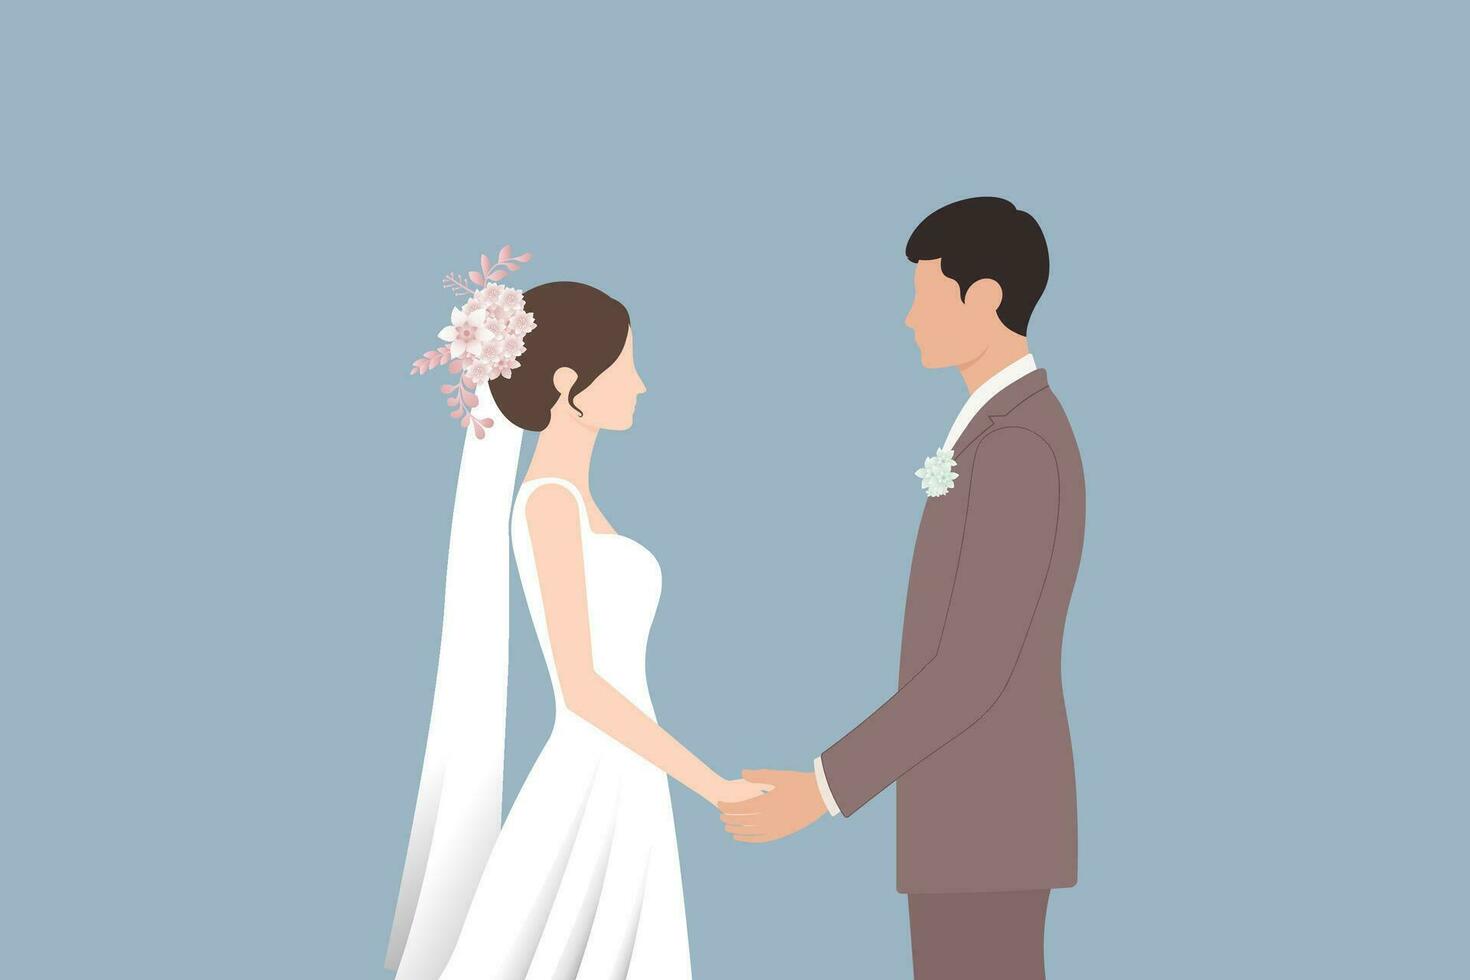 Hochzeit Paar Braut und Bräutigam. das Braut ist das Frau, und das Bräutigam ist das Mann. gerade verheiratet Paar und Ehe Zeremonie. Menschen im Liebe und Anfang von ein Paar Beziehung.Vektor Illustration. vektor